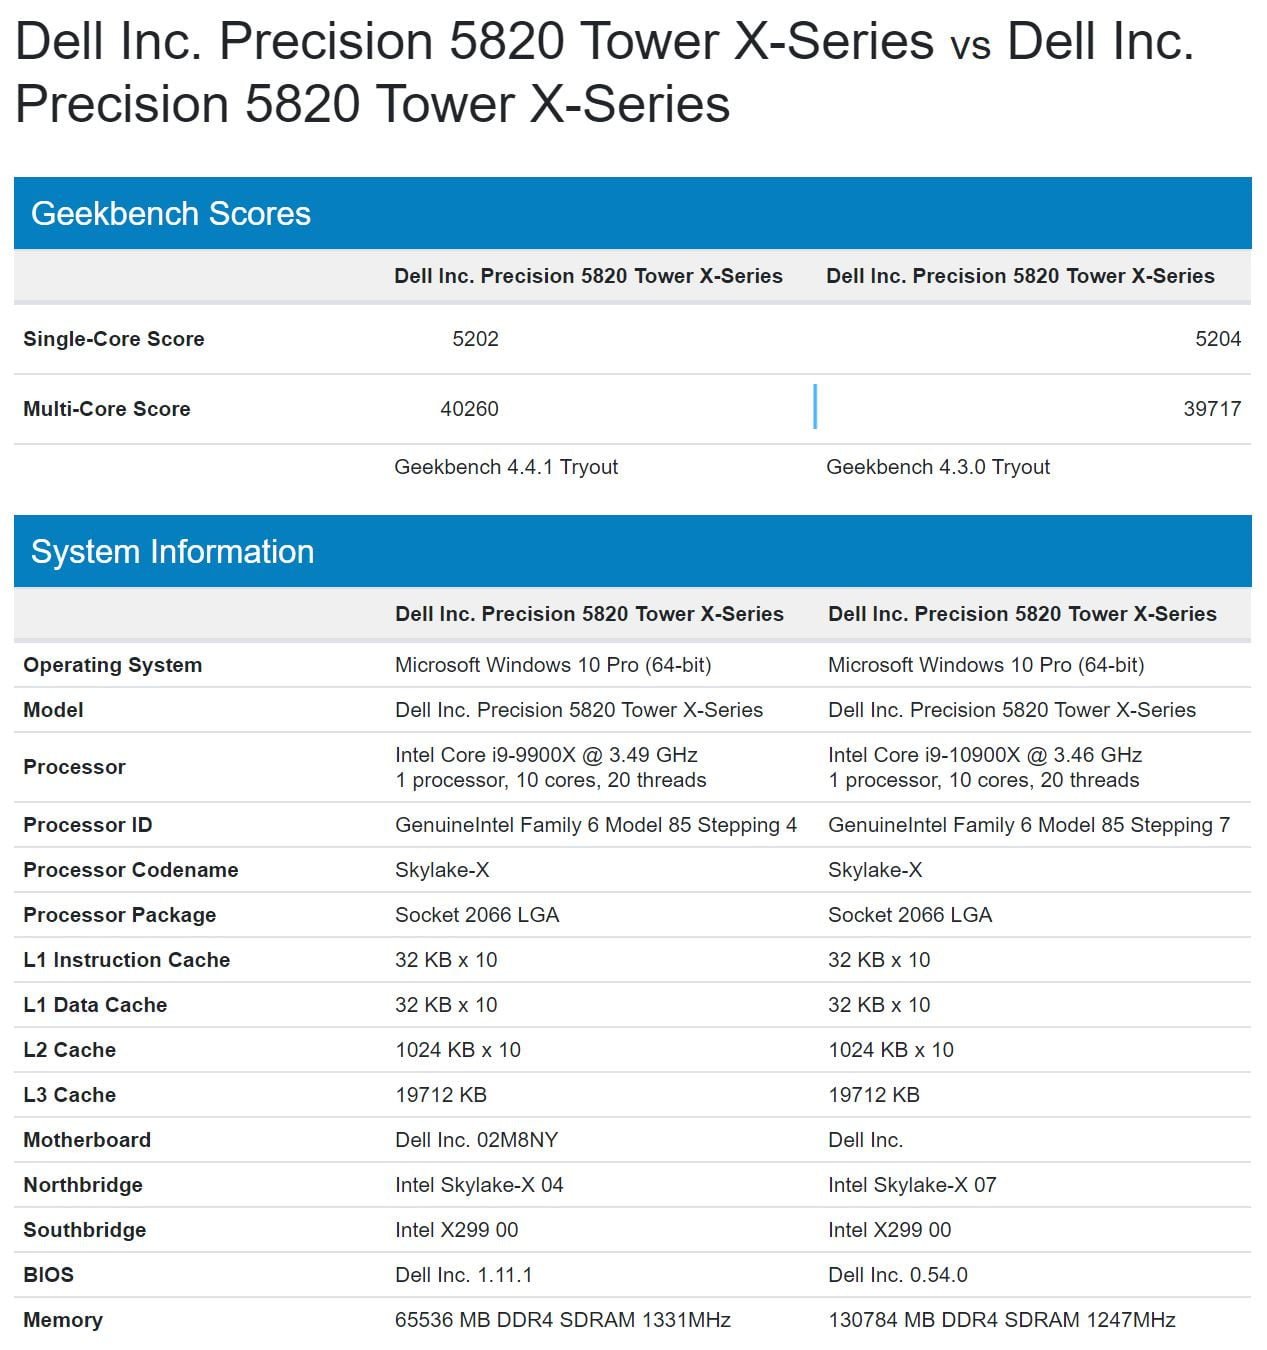 پردازنده‌های Cascade Lake X حداقل 10 هسته خواهند داشت؛ بنچمارک Core i9 10900X